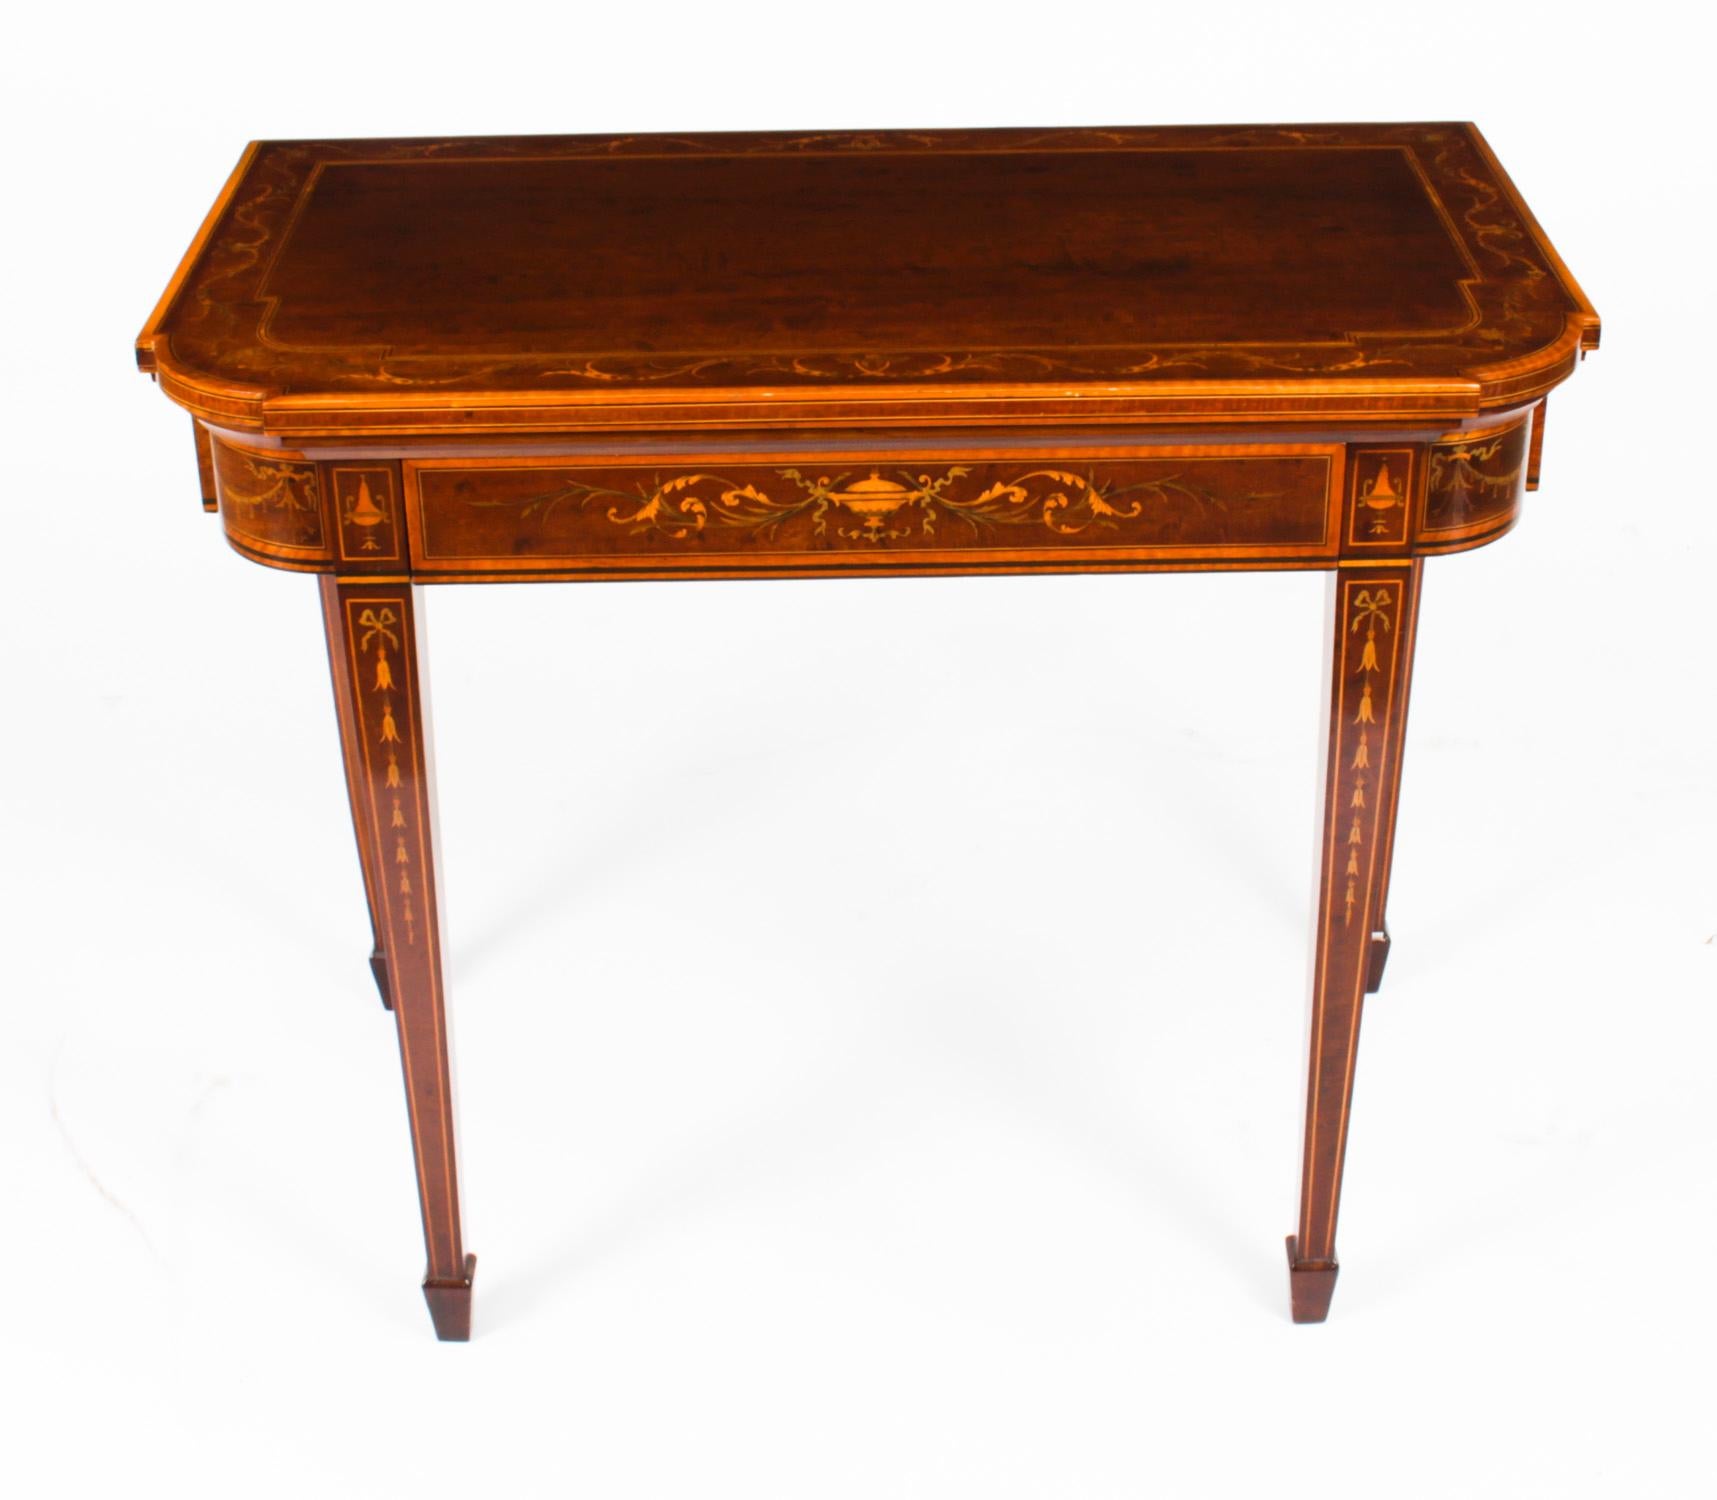 Il s'agit d'une fabuleuse table de jeu victorienne ancienne en acajou, bois de satin et marqueterie, à la manière d'Edwards & Roberts, datant d'environ 1860.

Il est fait d'un bel acajou flammé et de bois de satin avec une élégante incrustation de